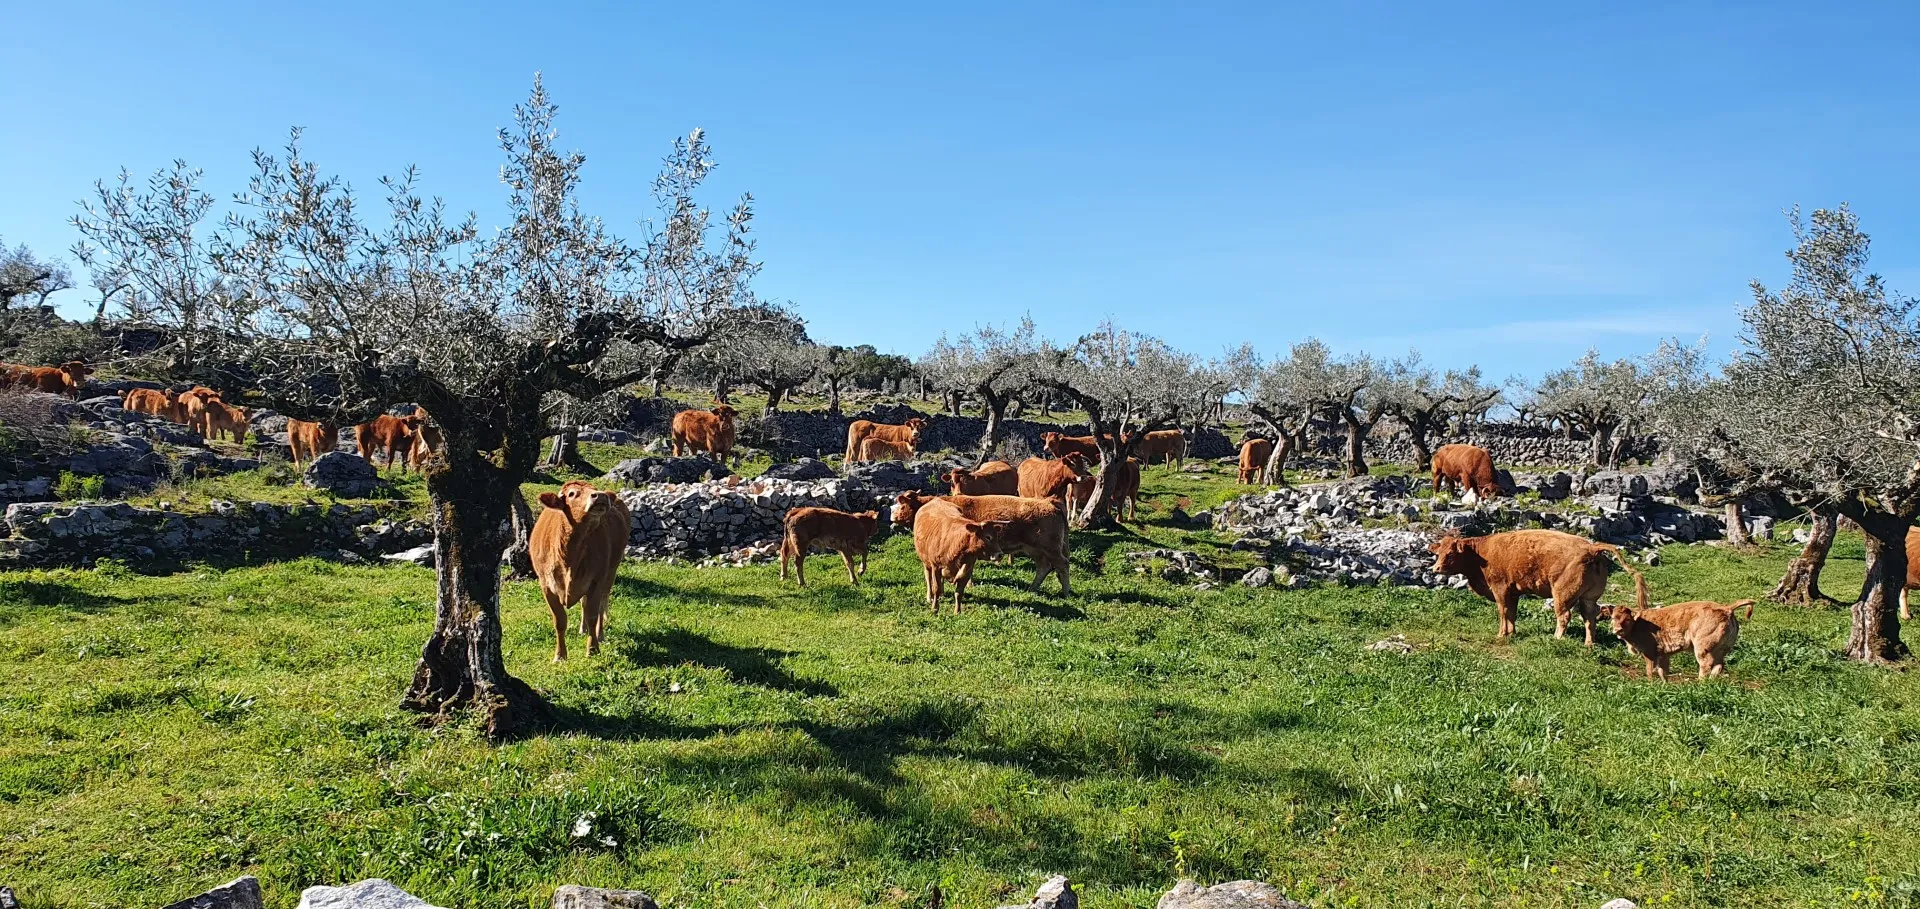 Koeien tussen de olijfbomen in Portugal